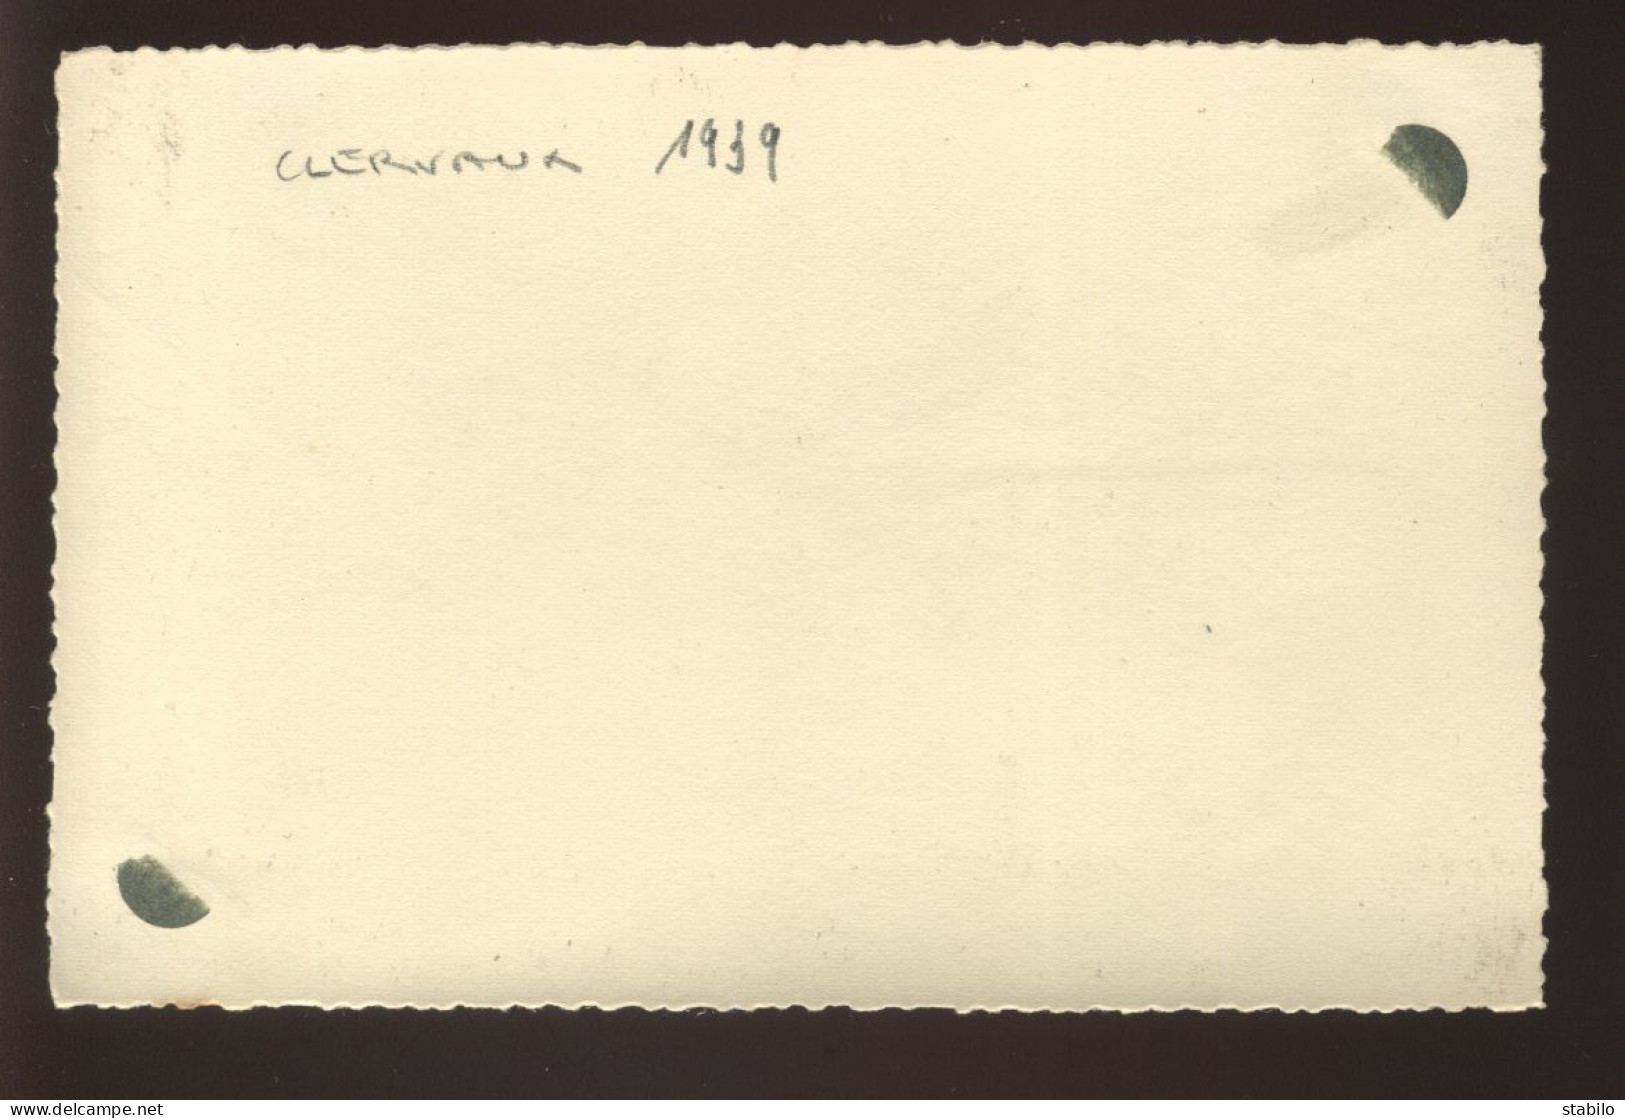 LUXEMBOURG - CLERVAUX - 1939 - FORMAT 13.5 X 8.8 CM - Lieux